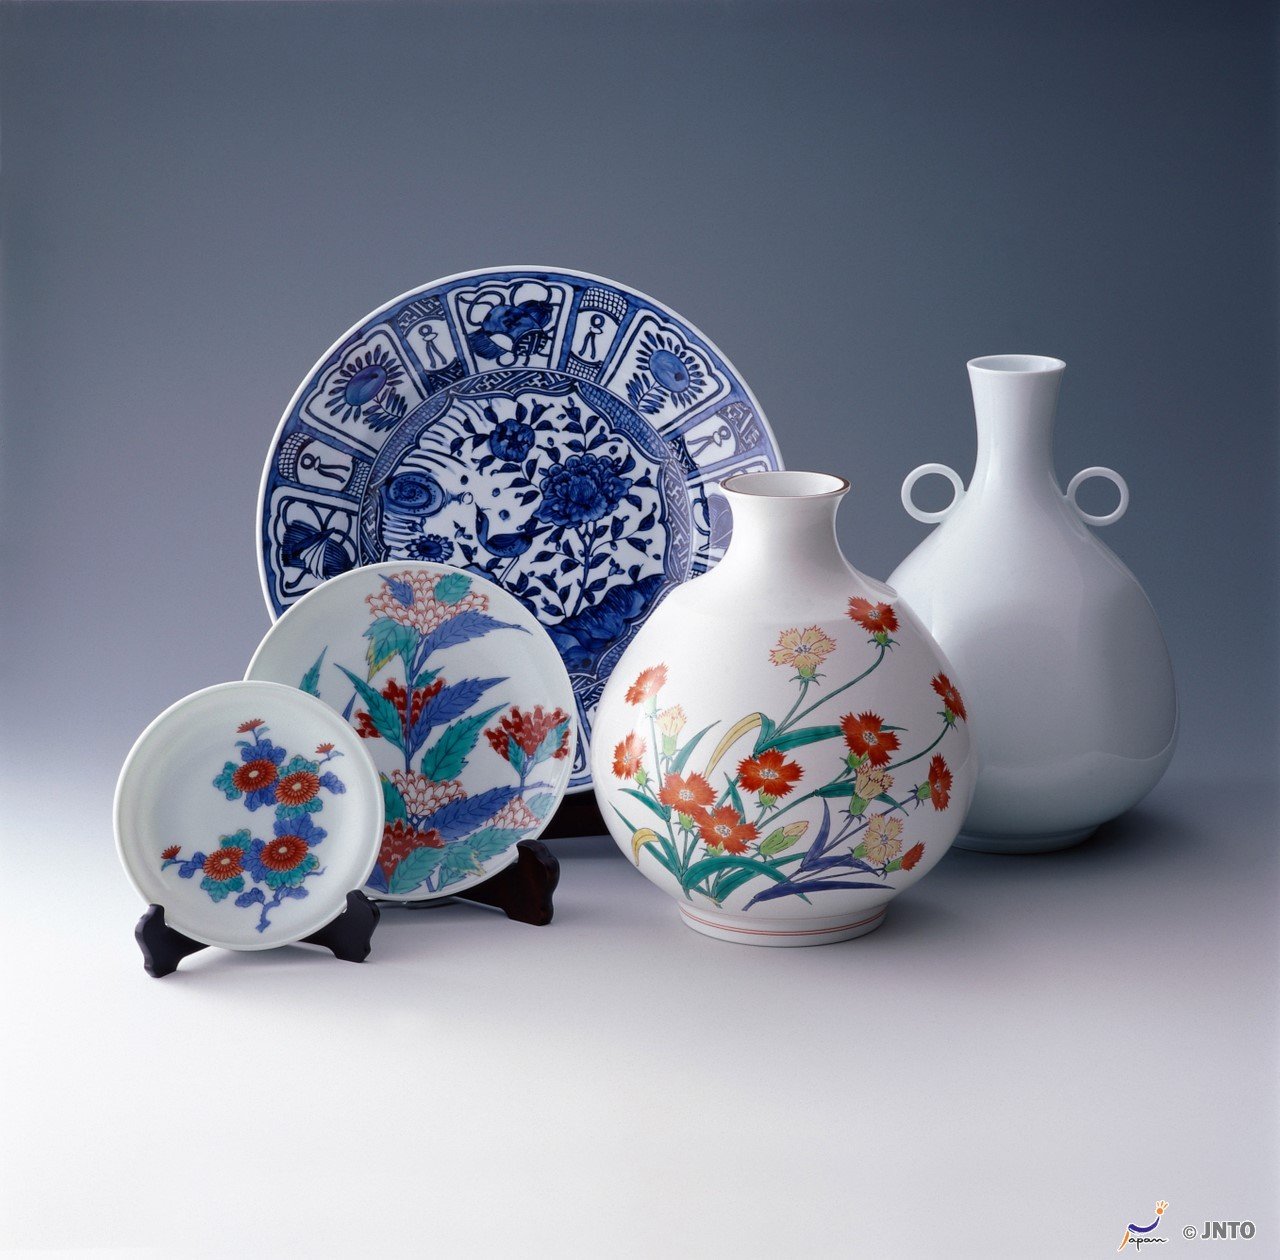 Arita and Imari porcelain